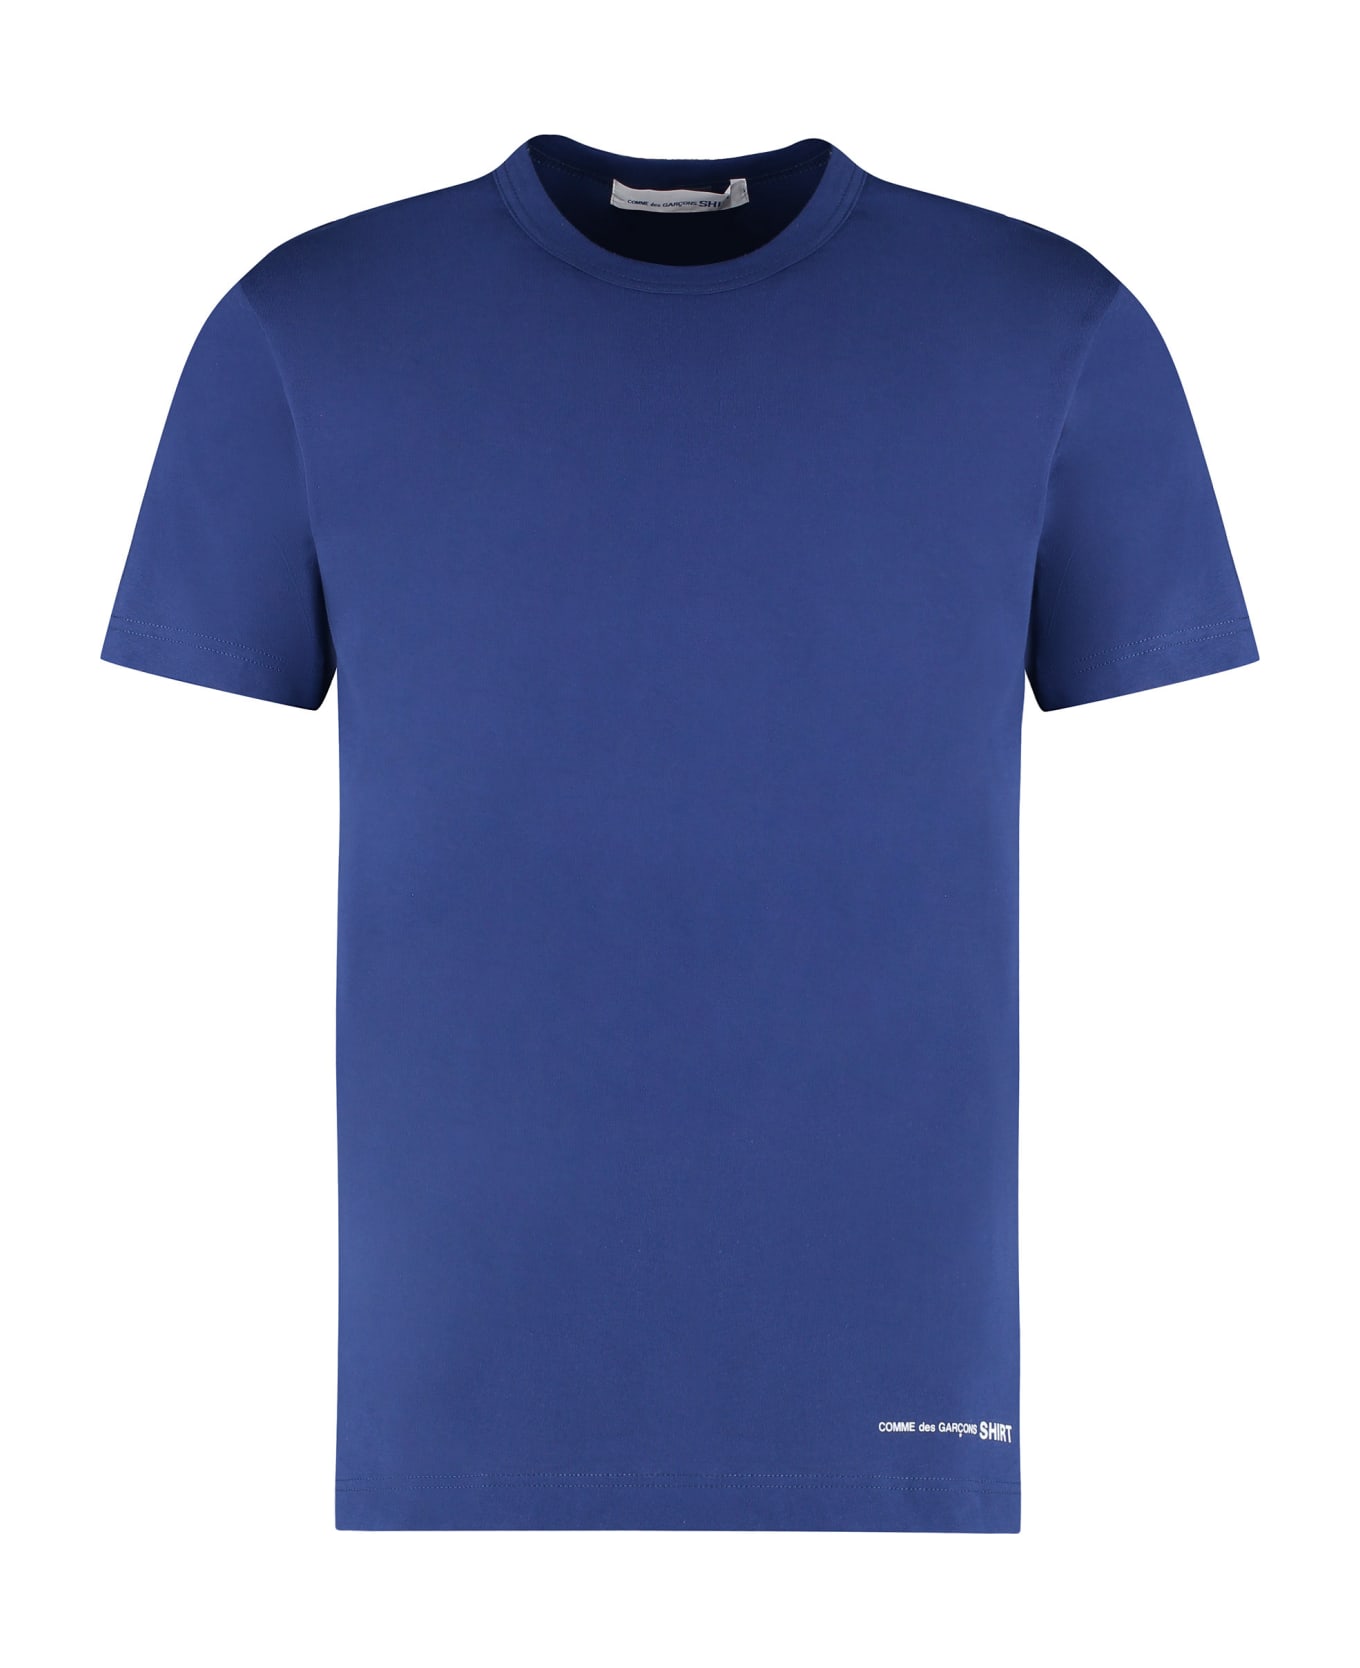 Comme des Garçons Shirt Cotton Crew-neck T-shirt - blue シャツ